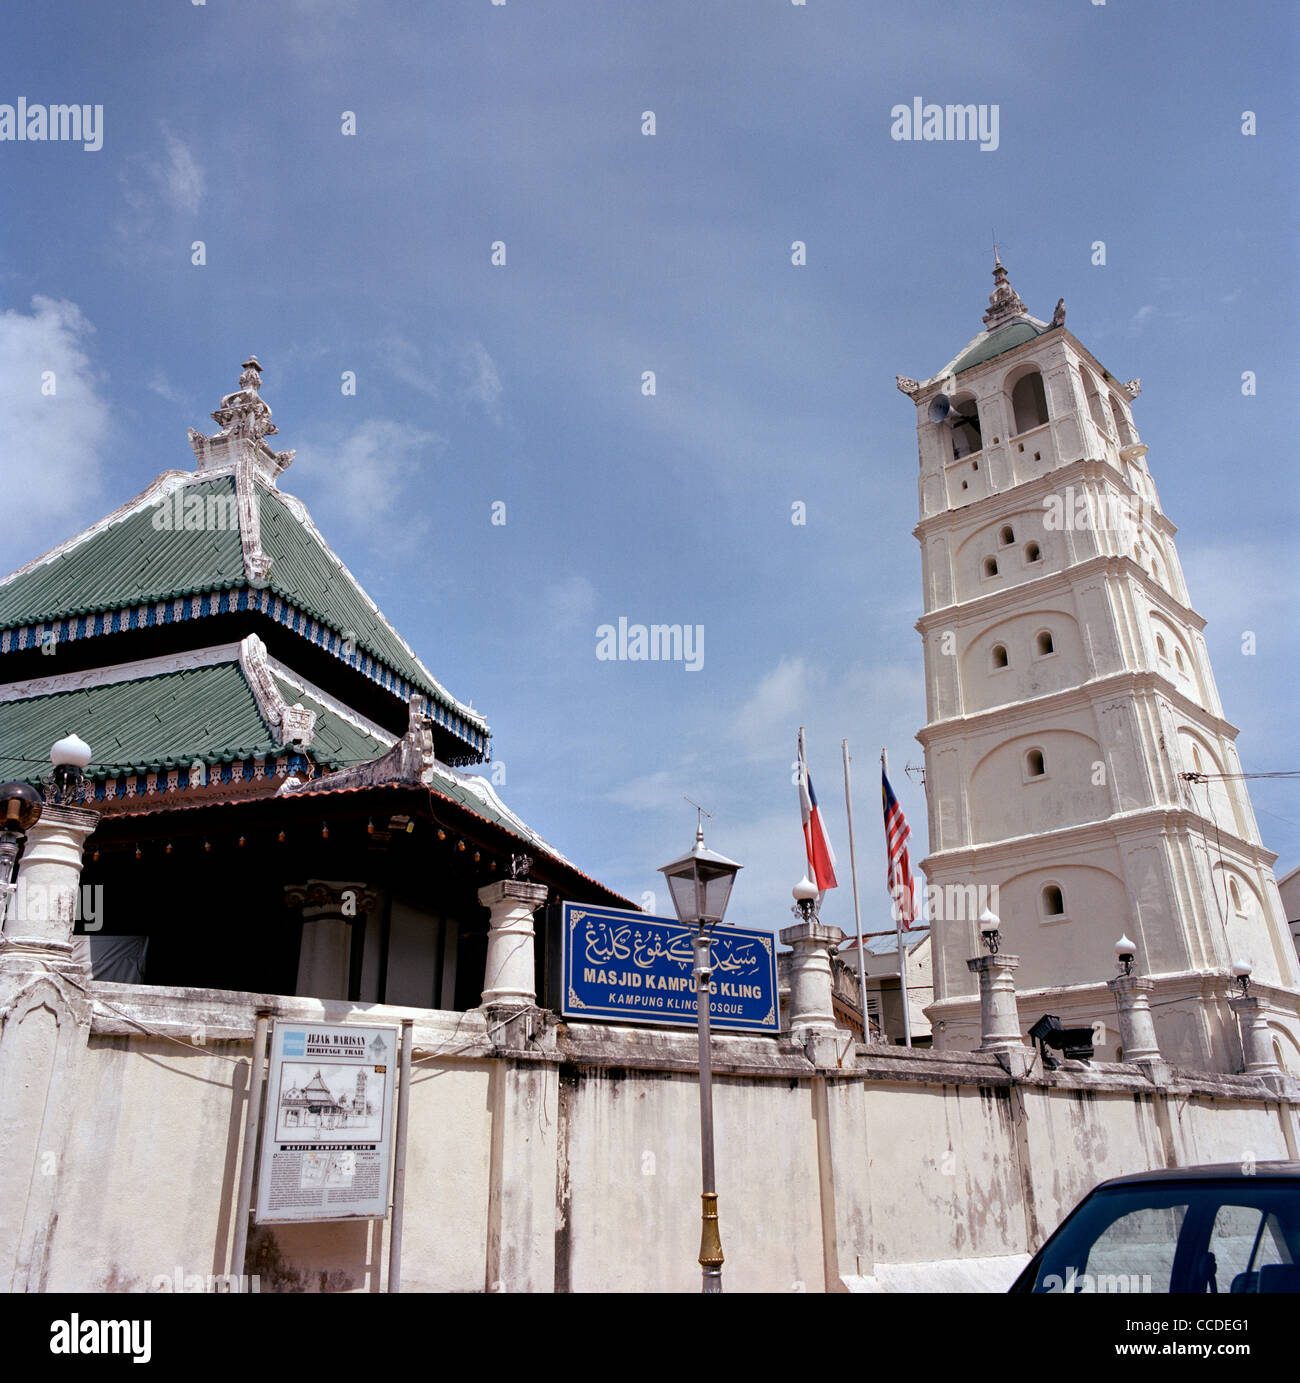 Die Muslimische Kampung Kling Moschee Gebäude in Malacca Melaka in Malaysia in Fernost Südostasien. Islamische Architektur Reisen Stockfoto